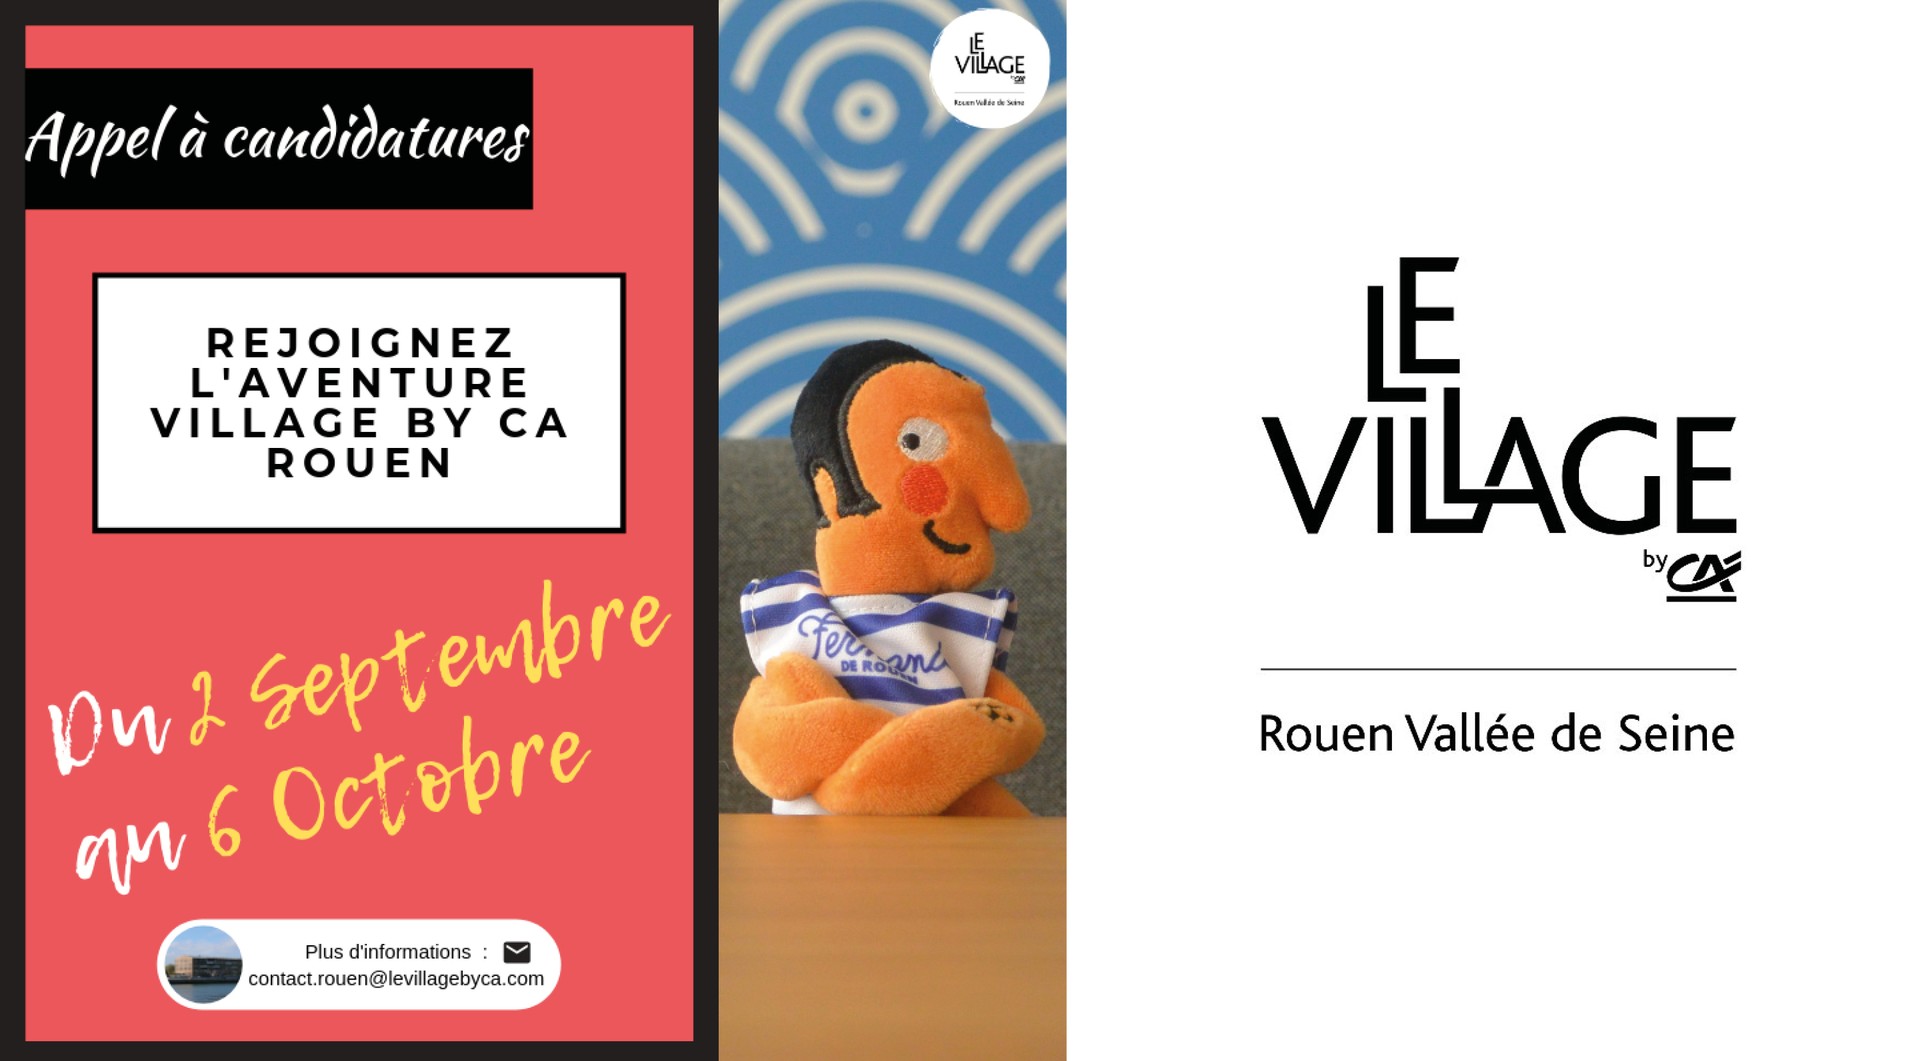 Village By CA Rouen Vallée de Seine : 10ème appel à candidatures